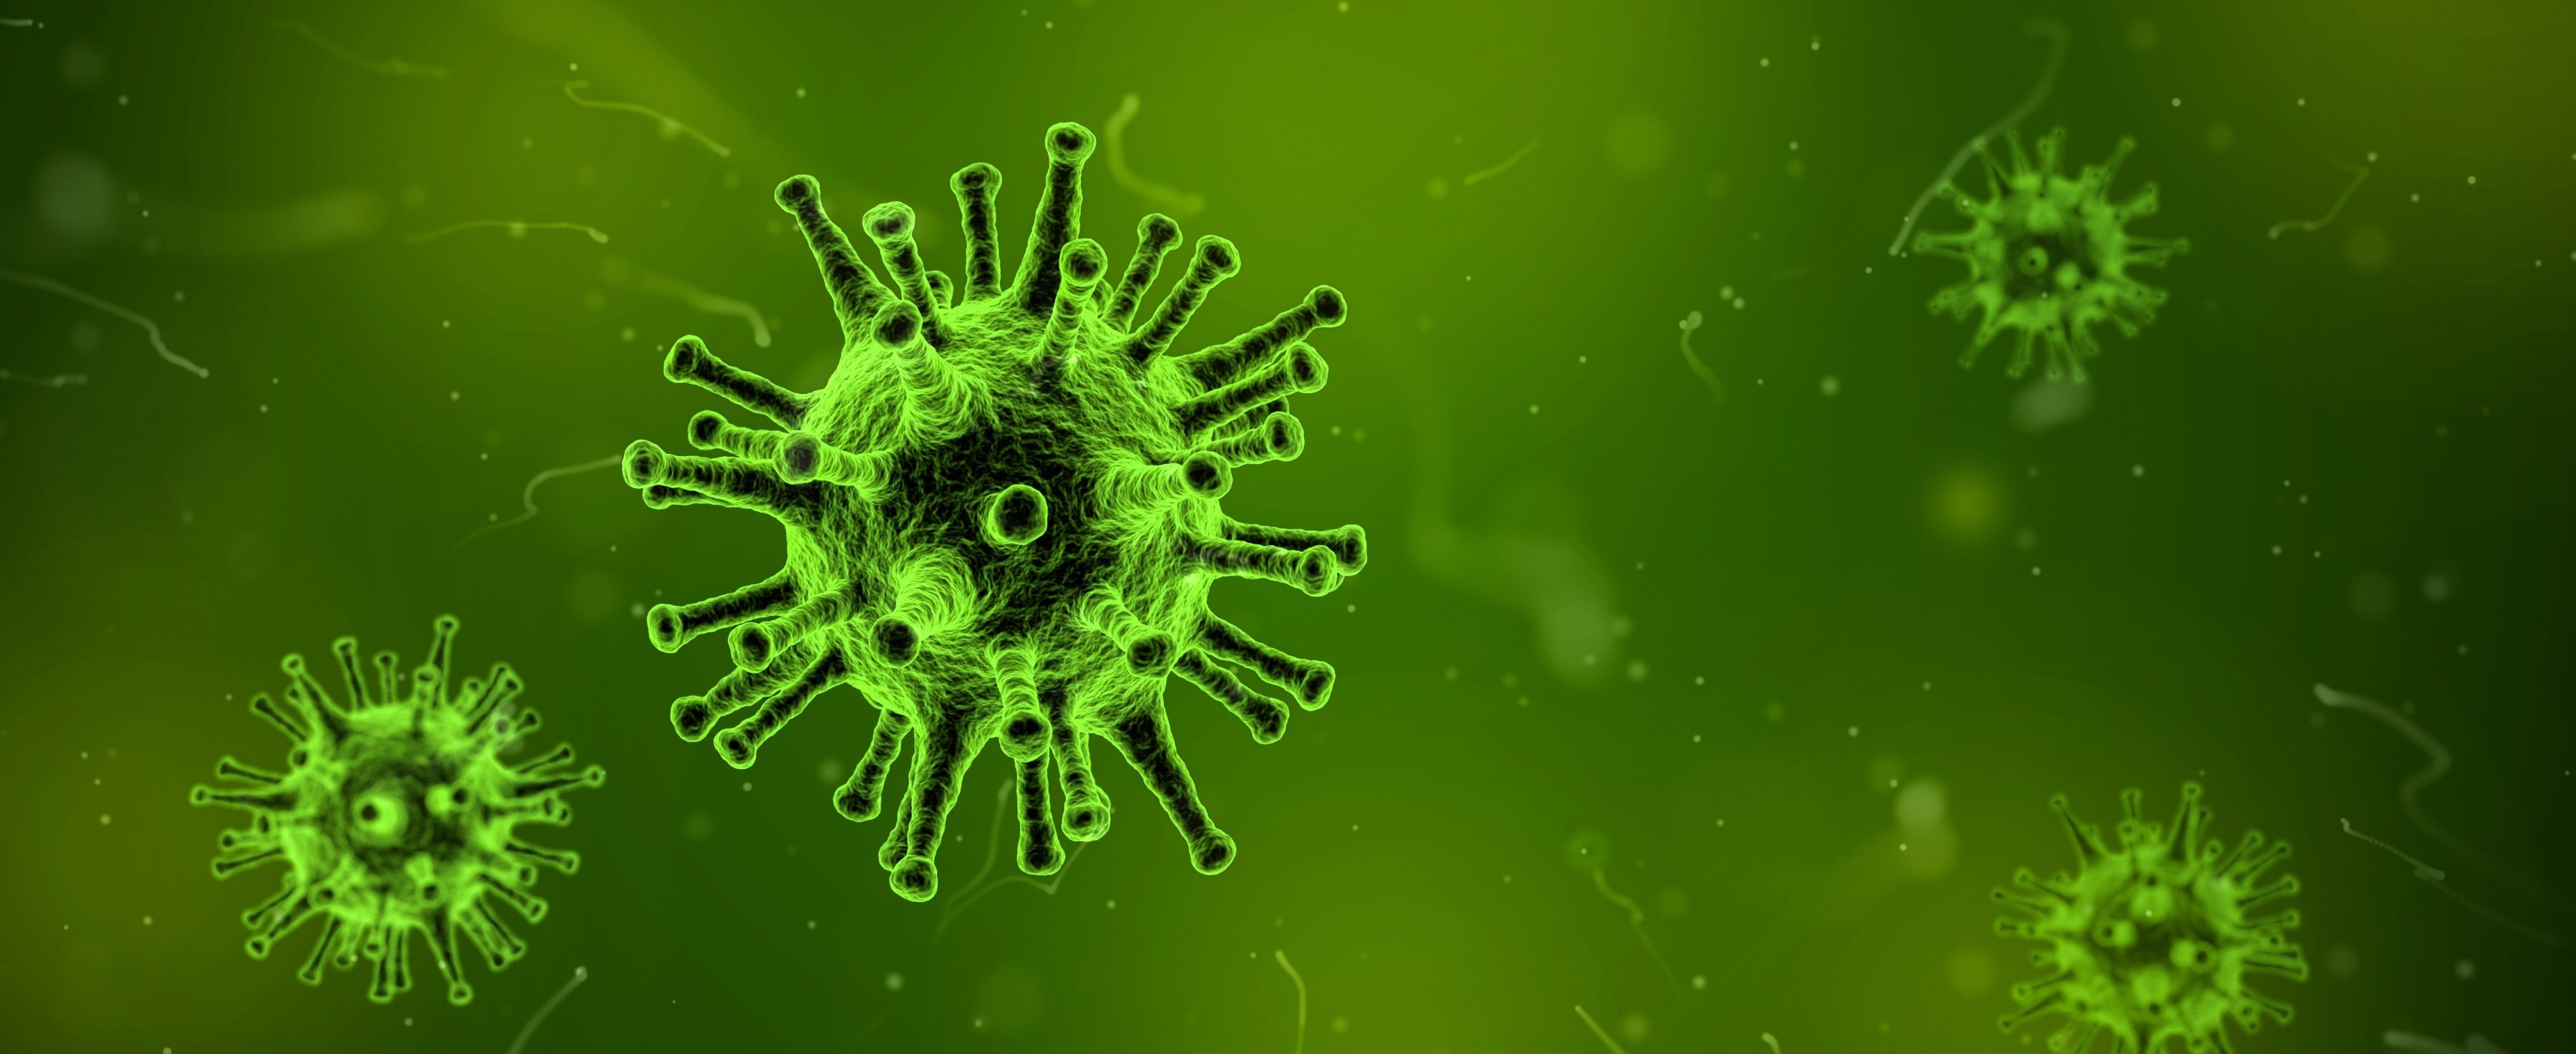 Elektronenmikroskopisches Bild von Viren vor grün-fluoreszierendem Hintergrund